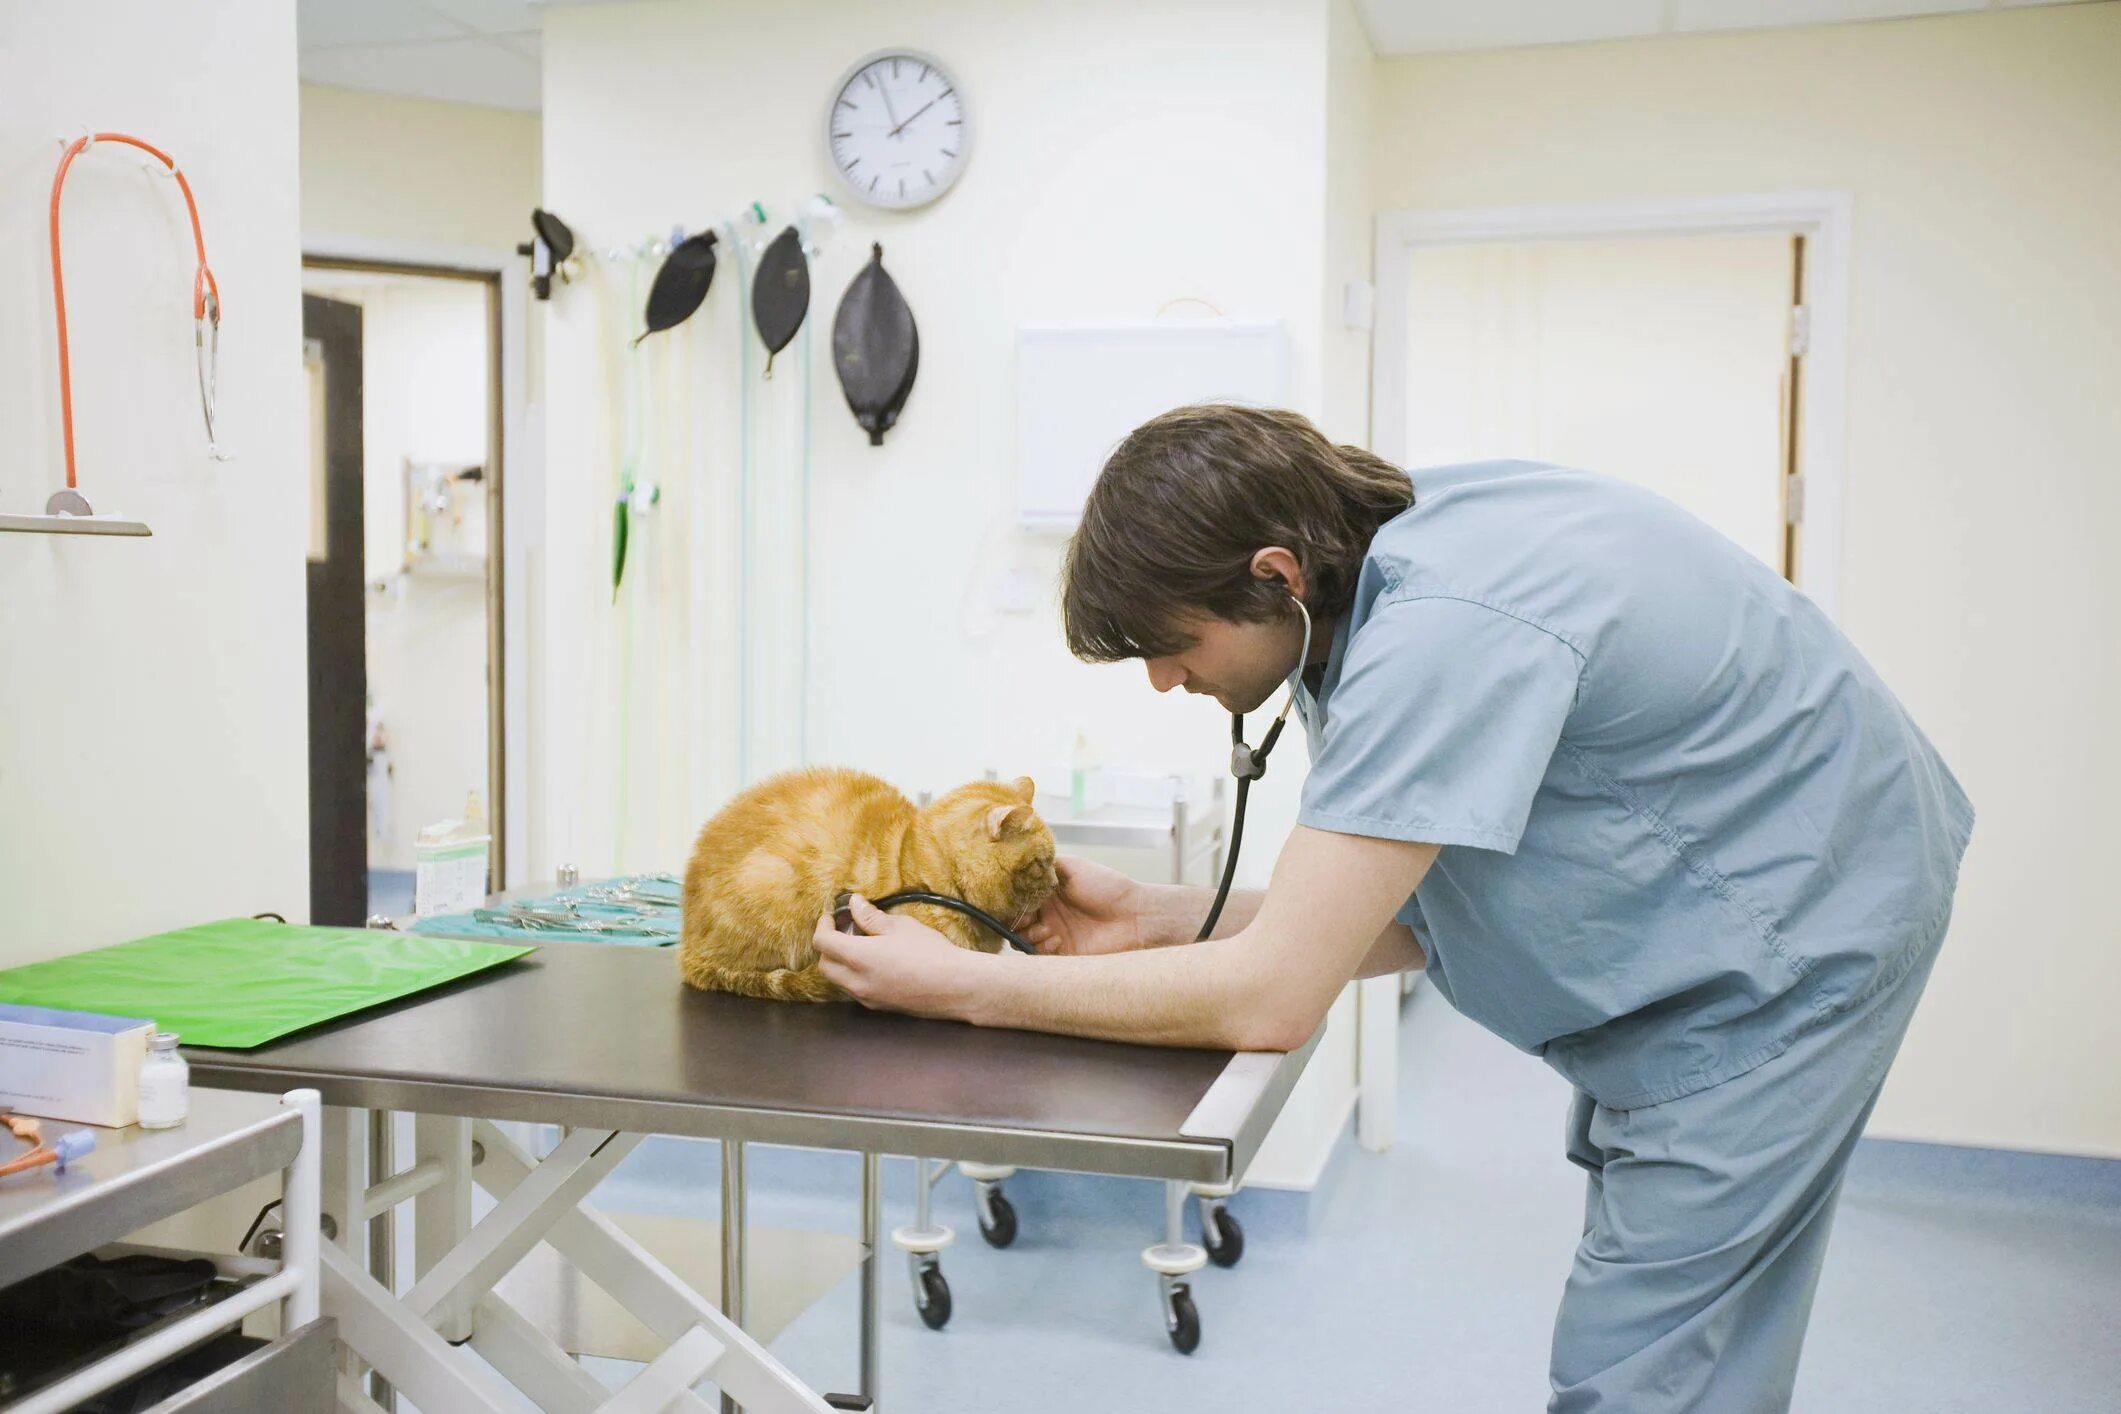 Ветеринар для кошки отзывы. Ветеринар осматривает кошку. Карьера ветеринара. Место работы ветеринара. Стол в кабинете ветеринара.